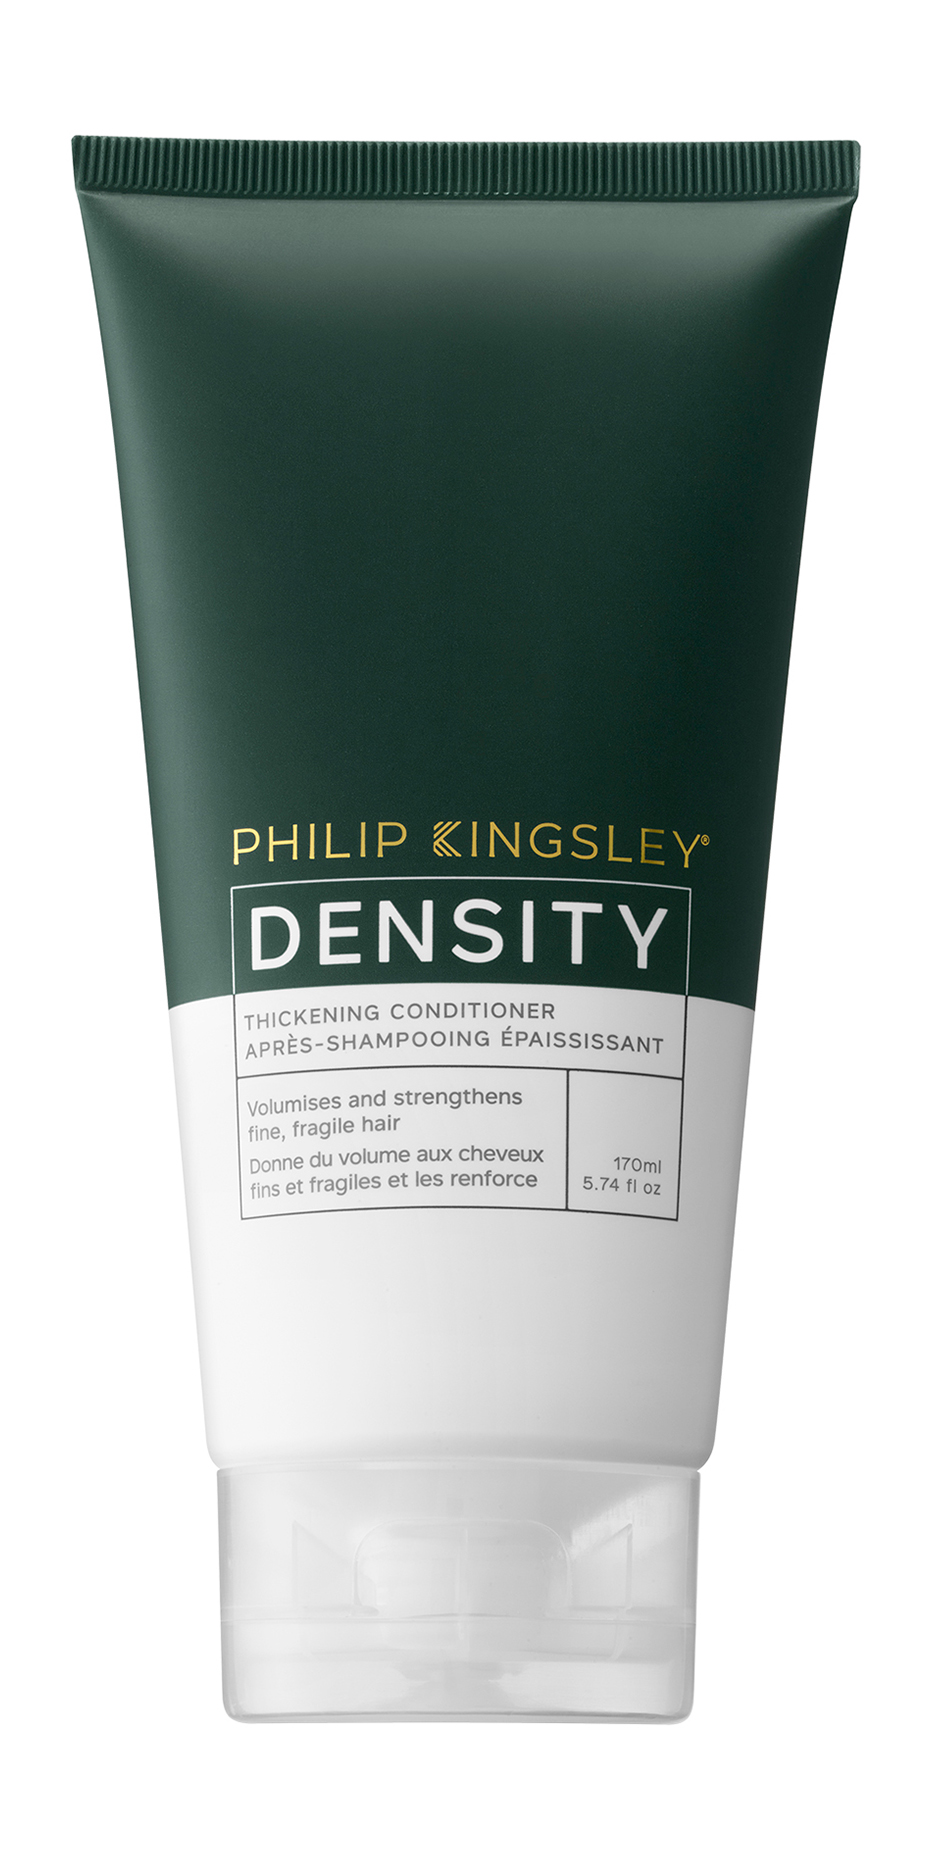 Кондиционер для волос Philip Kingsley Density Thickening Conditioner, 170 мл восстанавливающая маска для волос после химической обработки color defense post treatment 76575 200 мл